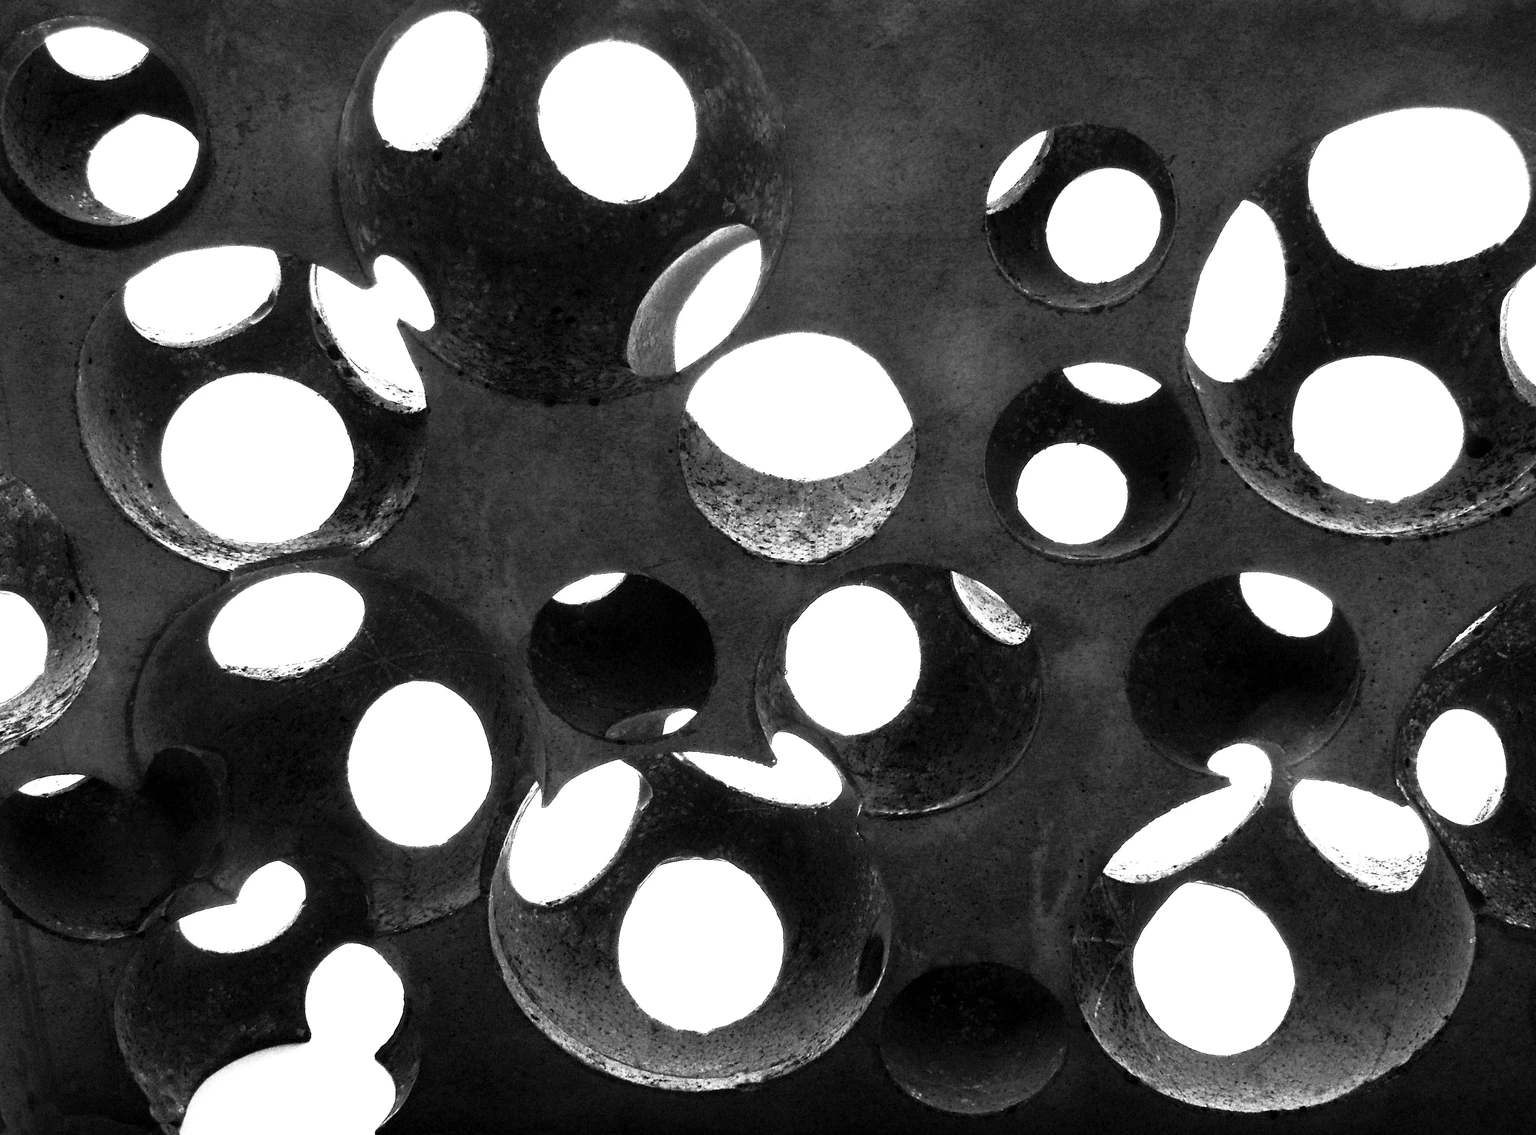 Tanulmány gömbökkel, 2018 - beton, 20,5 x 32 x 4,9 cm